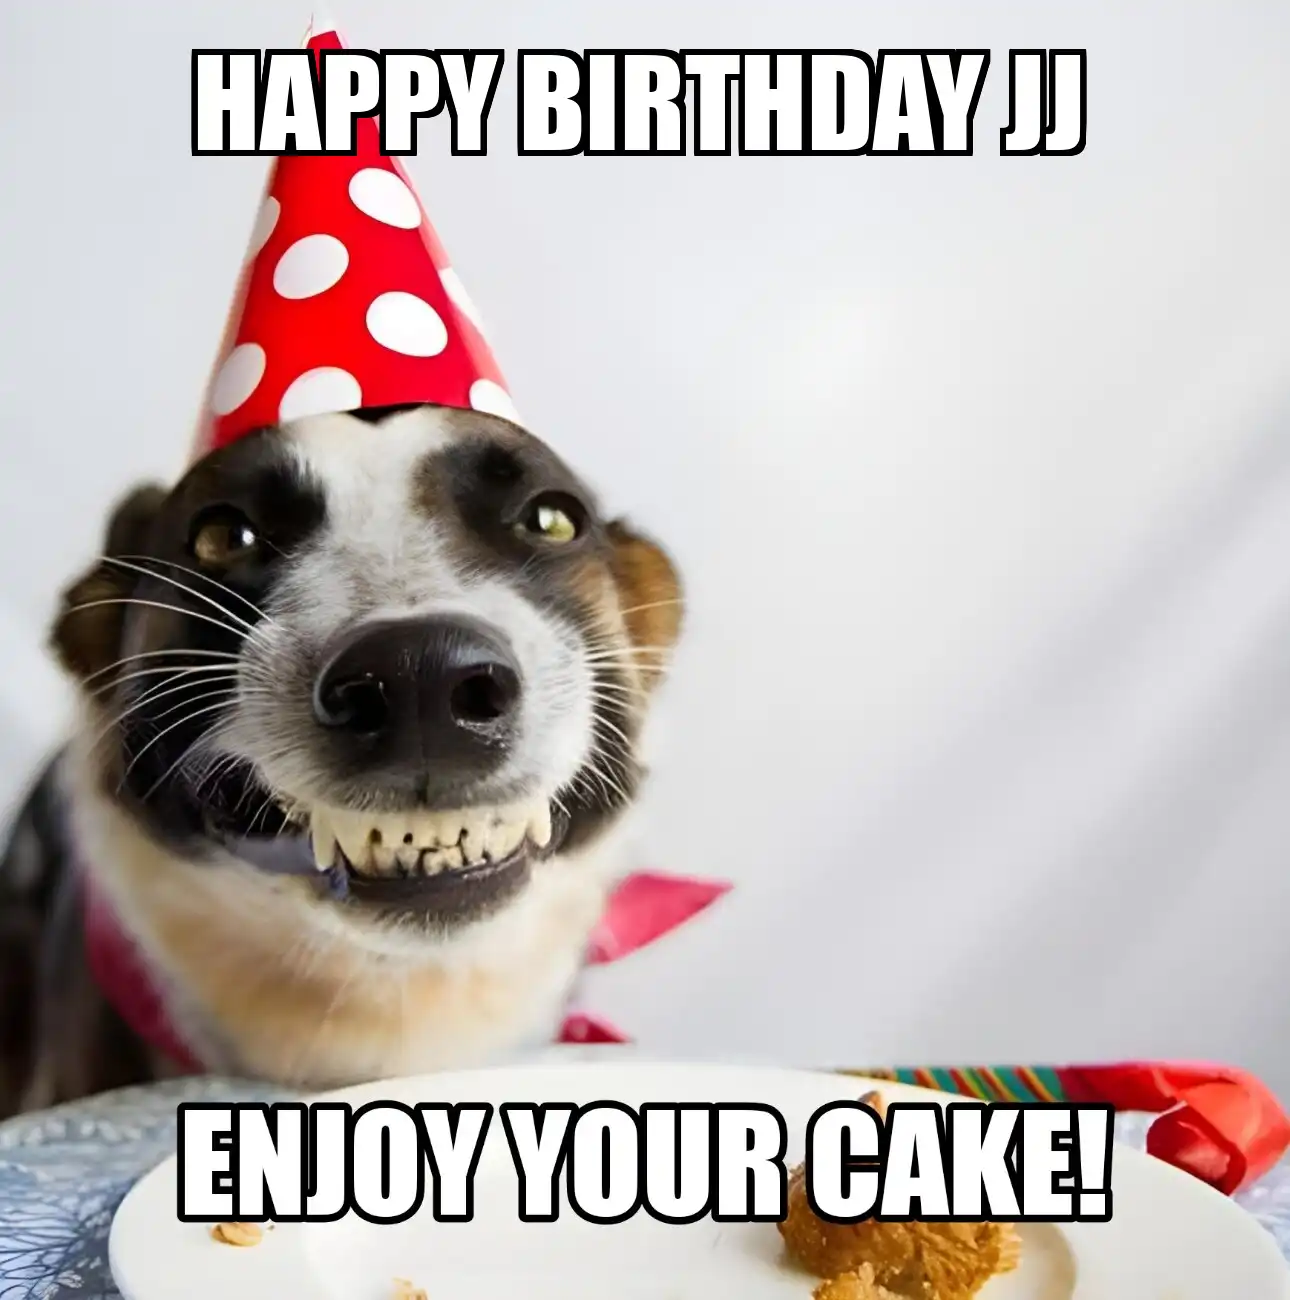 Happy Birthday Jj Enjoy Your Cake Dog Meme